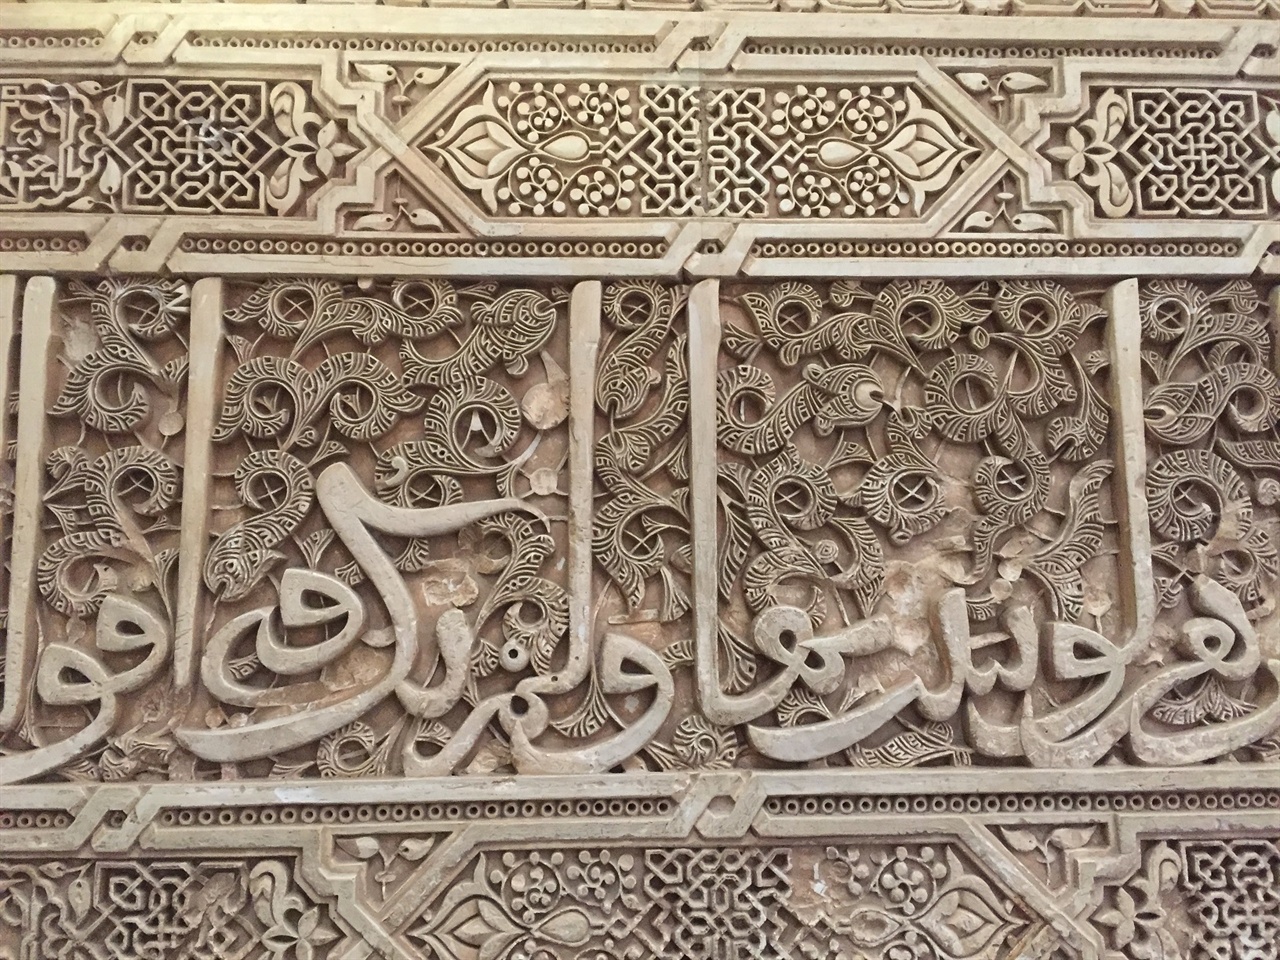 "알라는 위대하다!"라는 이슬람어 표기라고 해요. 어디에든 크기는 변주되어 있었지만, 벽에 가득하게 새겨져 있었어요. 어쩌면, 이 공간 전체가 그들의 기도와 염원을 가득 담고 있지 않을까요? 